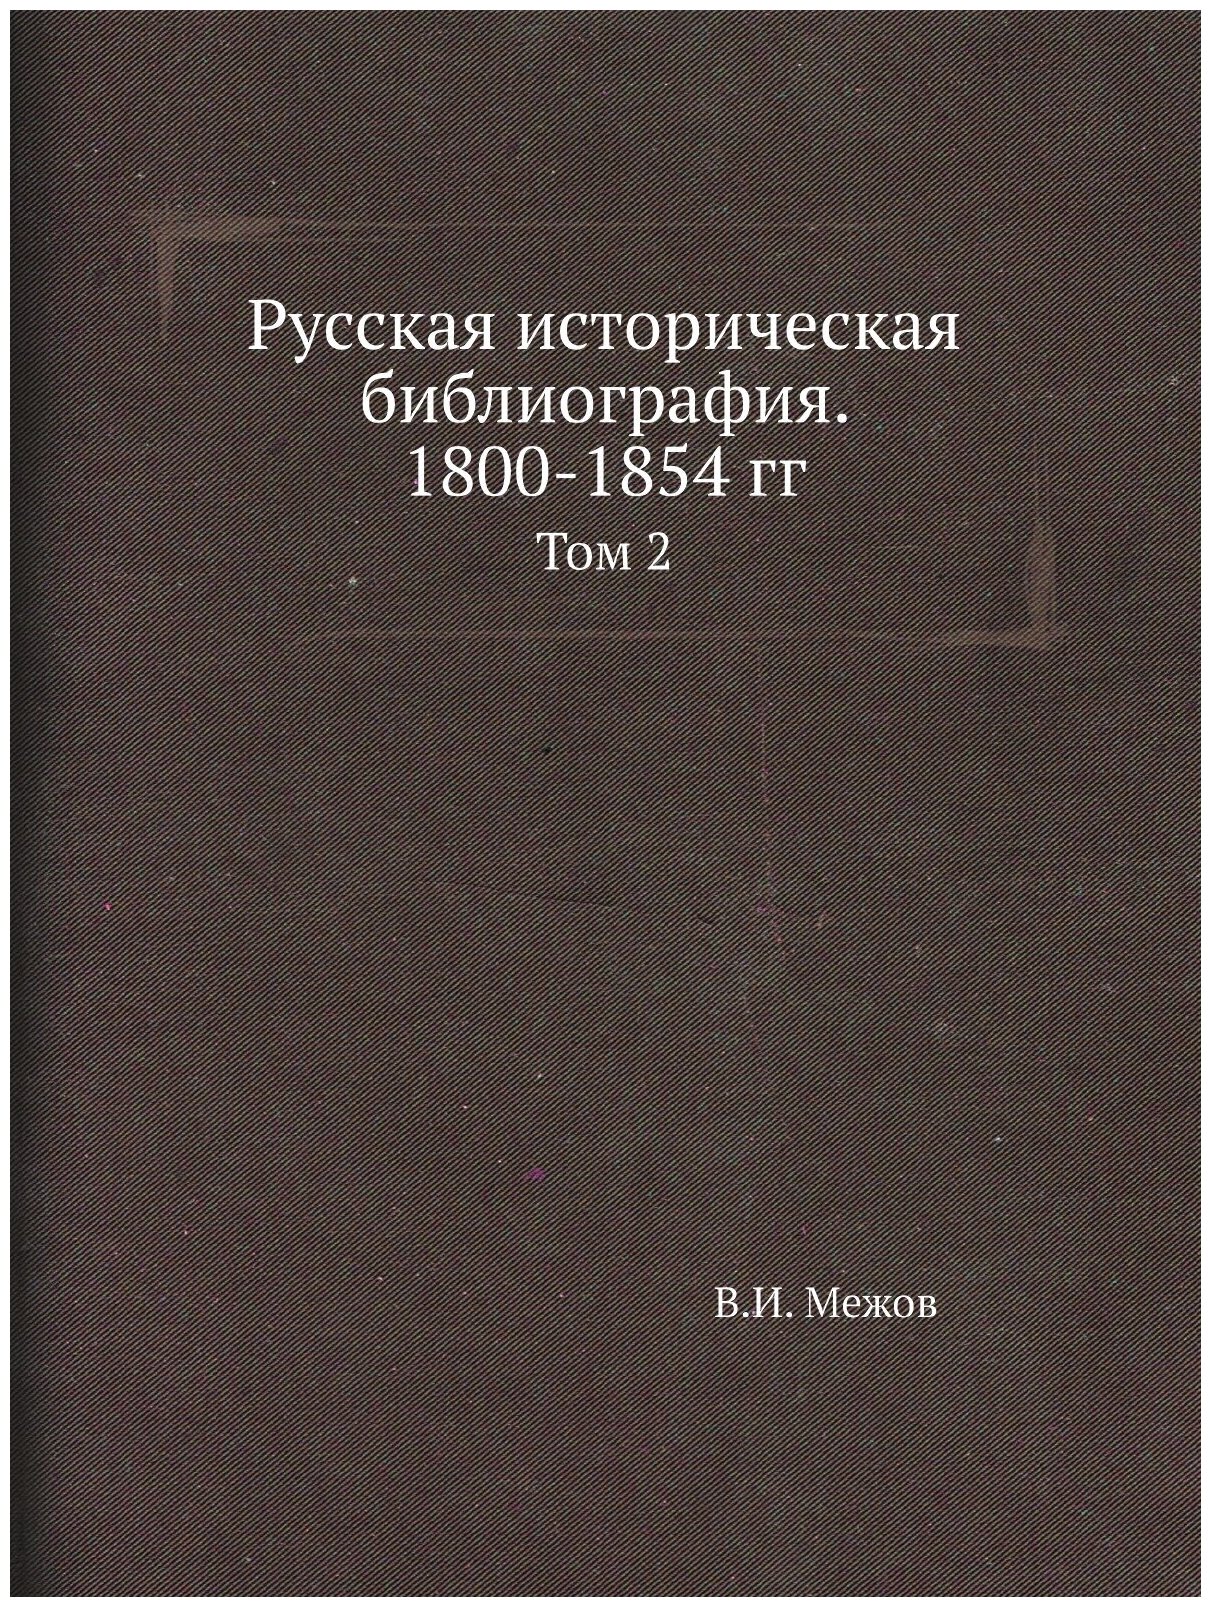 Русская историческая библиография. 1800-1854 гг. Том 2